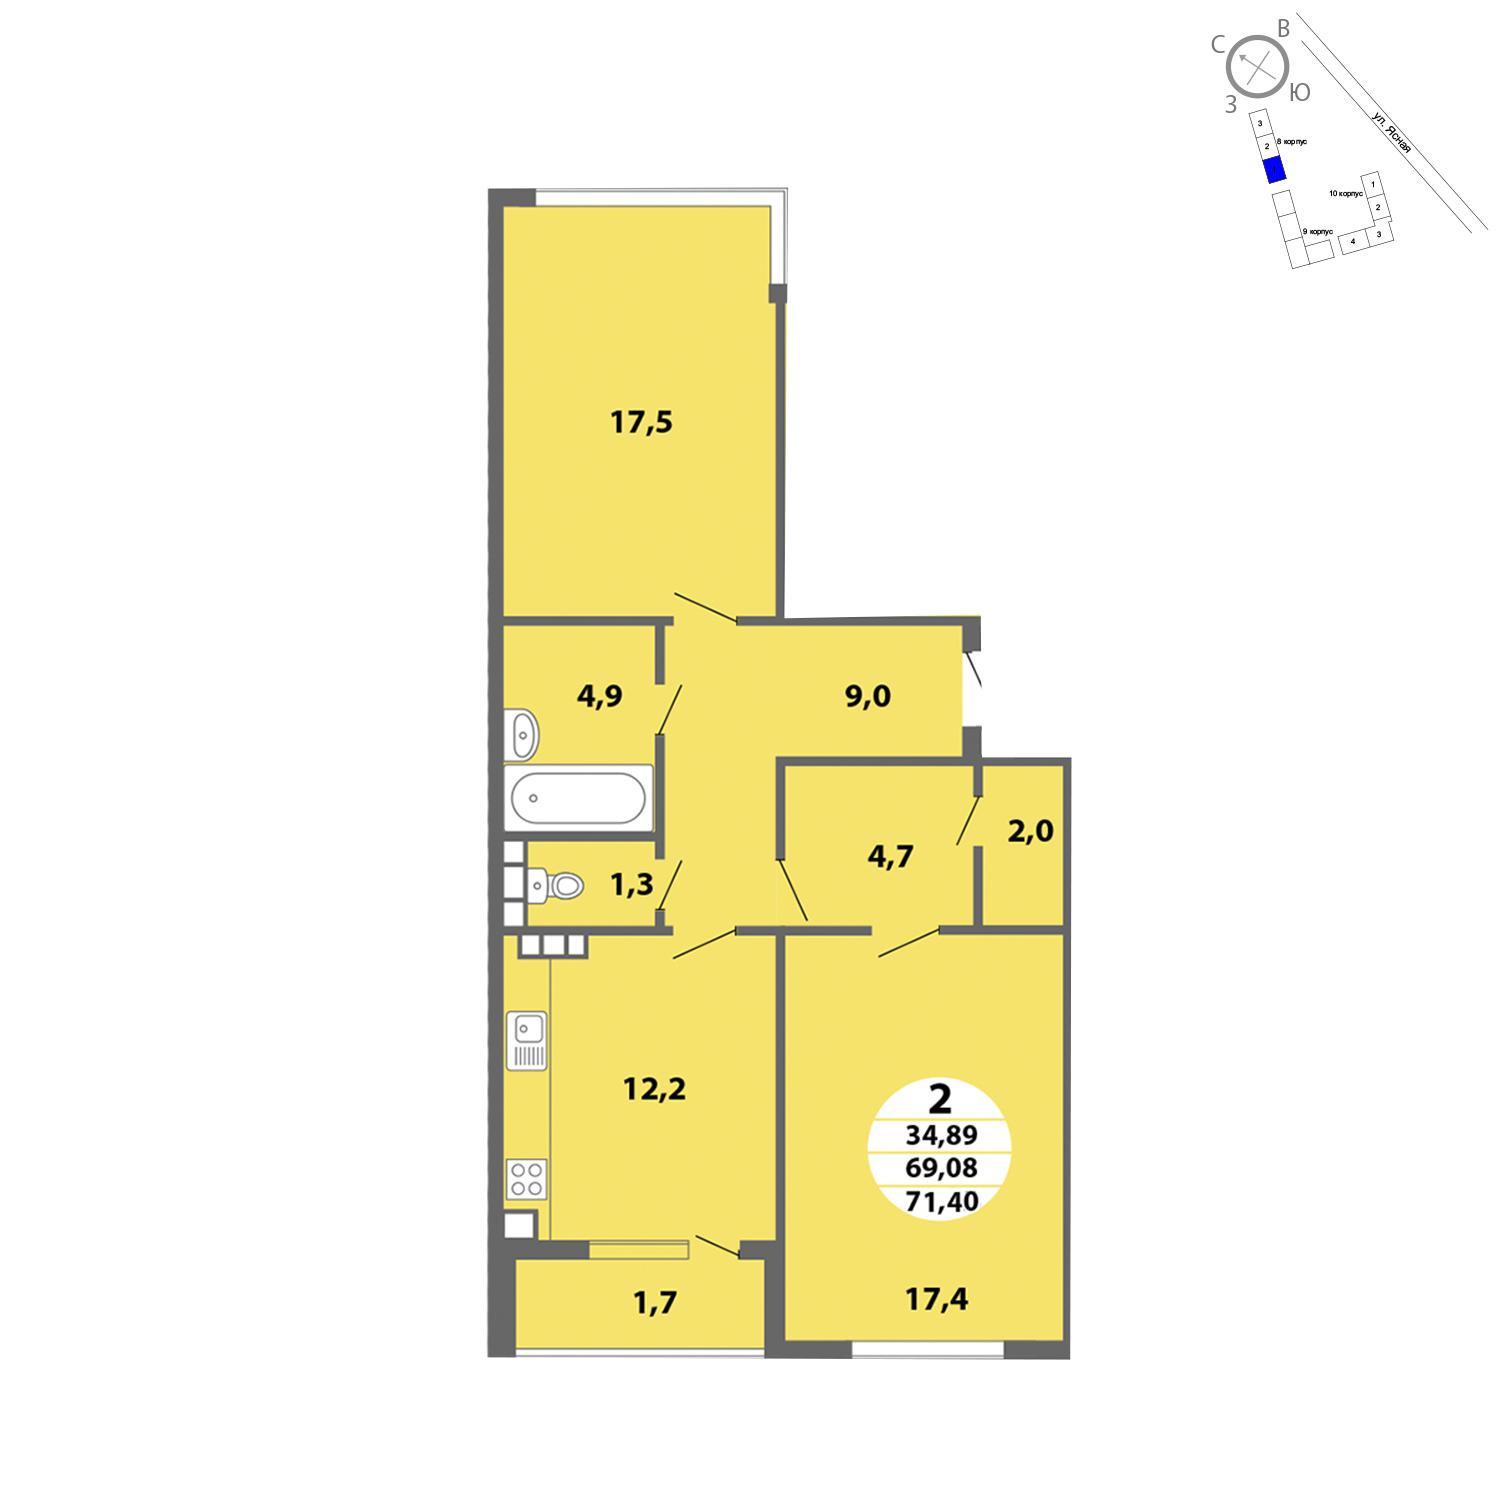 Продаётся 2-комнатная квартира в новостройке 71.6 кв.м. этаж 1/4 за 0 руб 